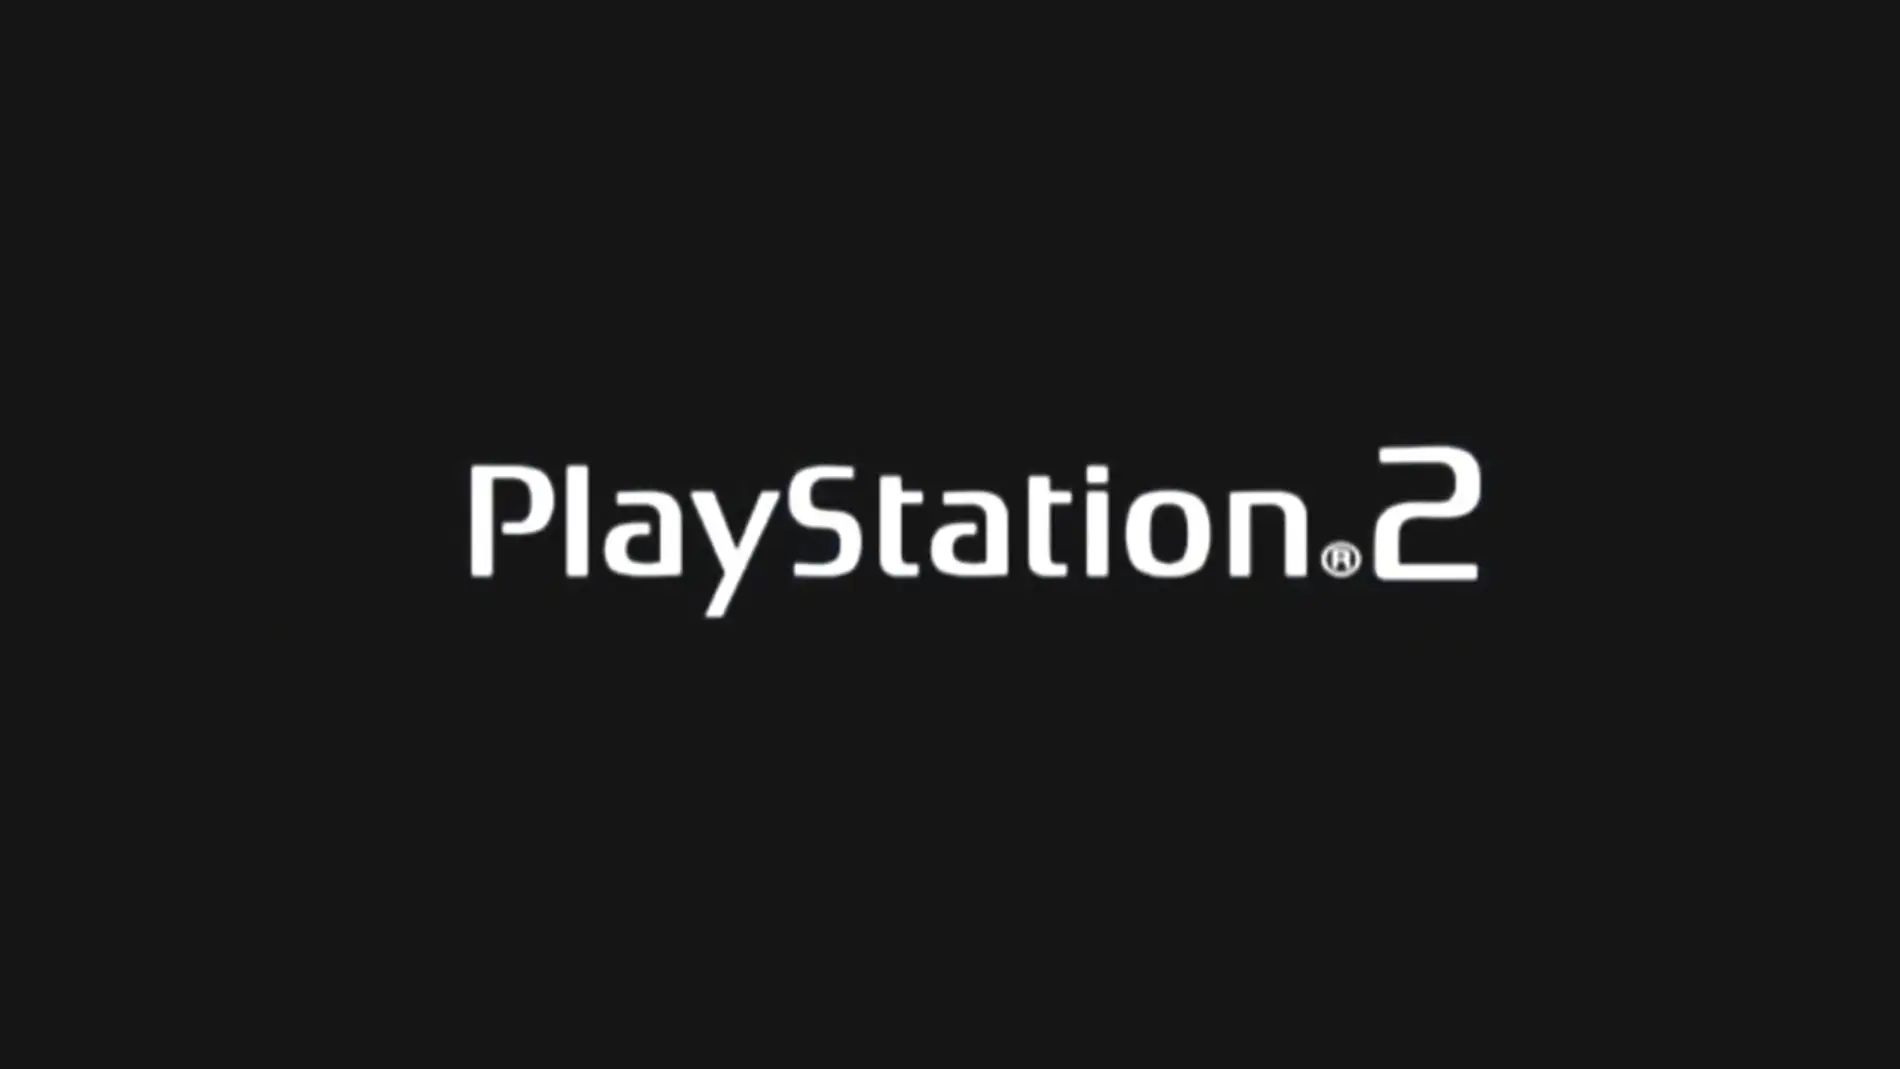 Logo de PlayStation 2 